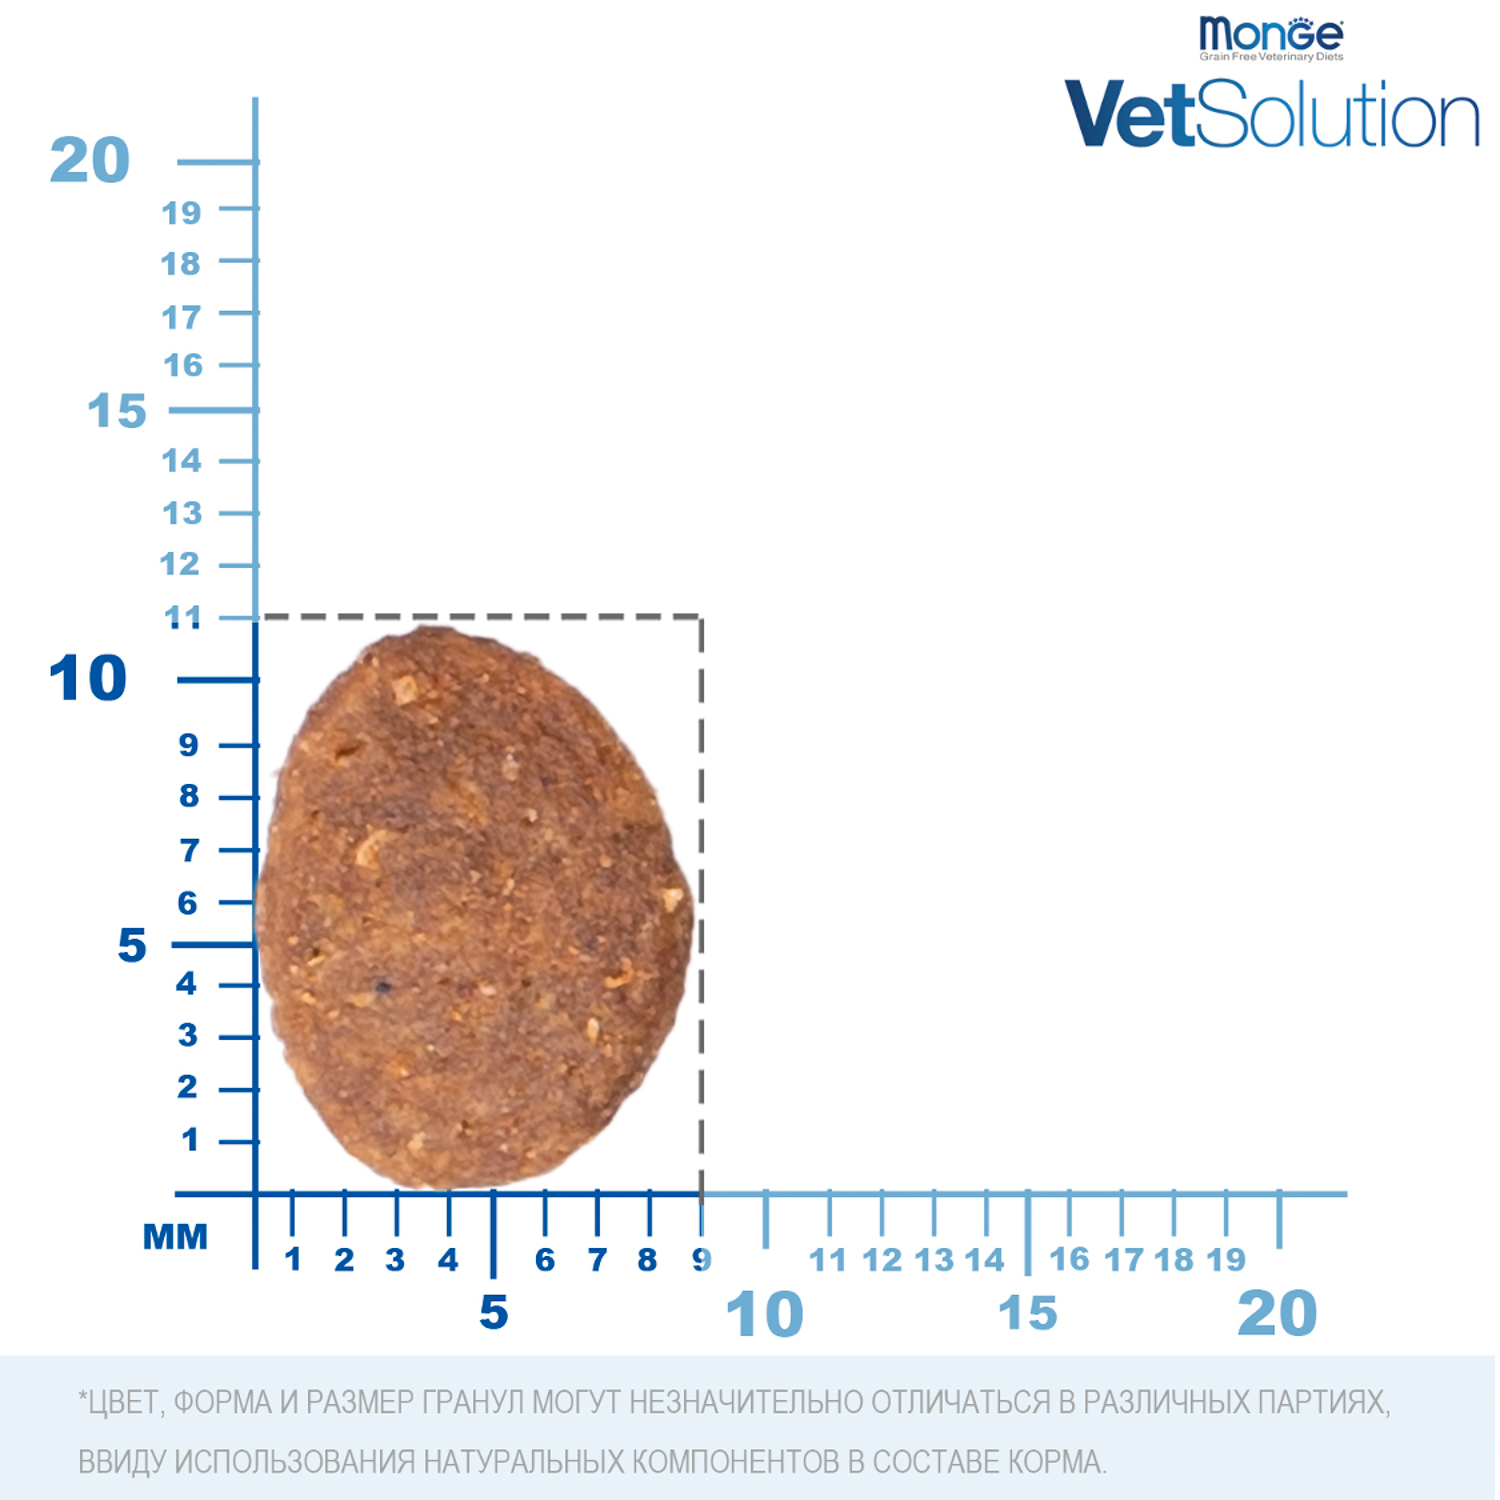 Ветеринарная диета Monge VetSolution Dog Gastrointestinal Гастроинтестинал для собак при заболеваниях ЖКТ 12 кг